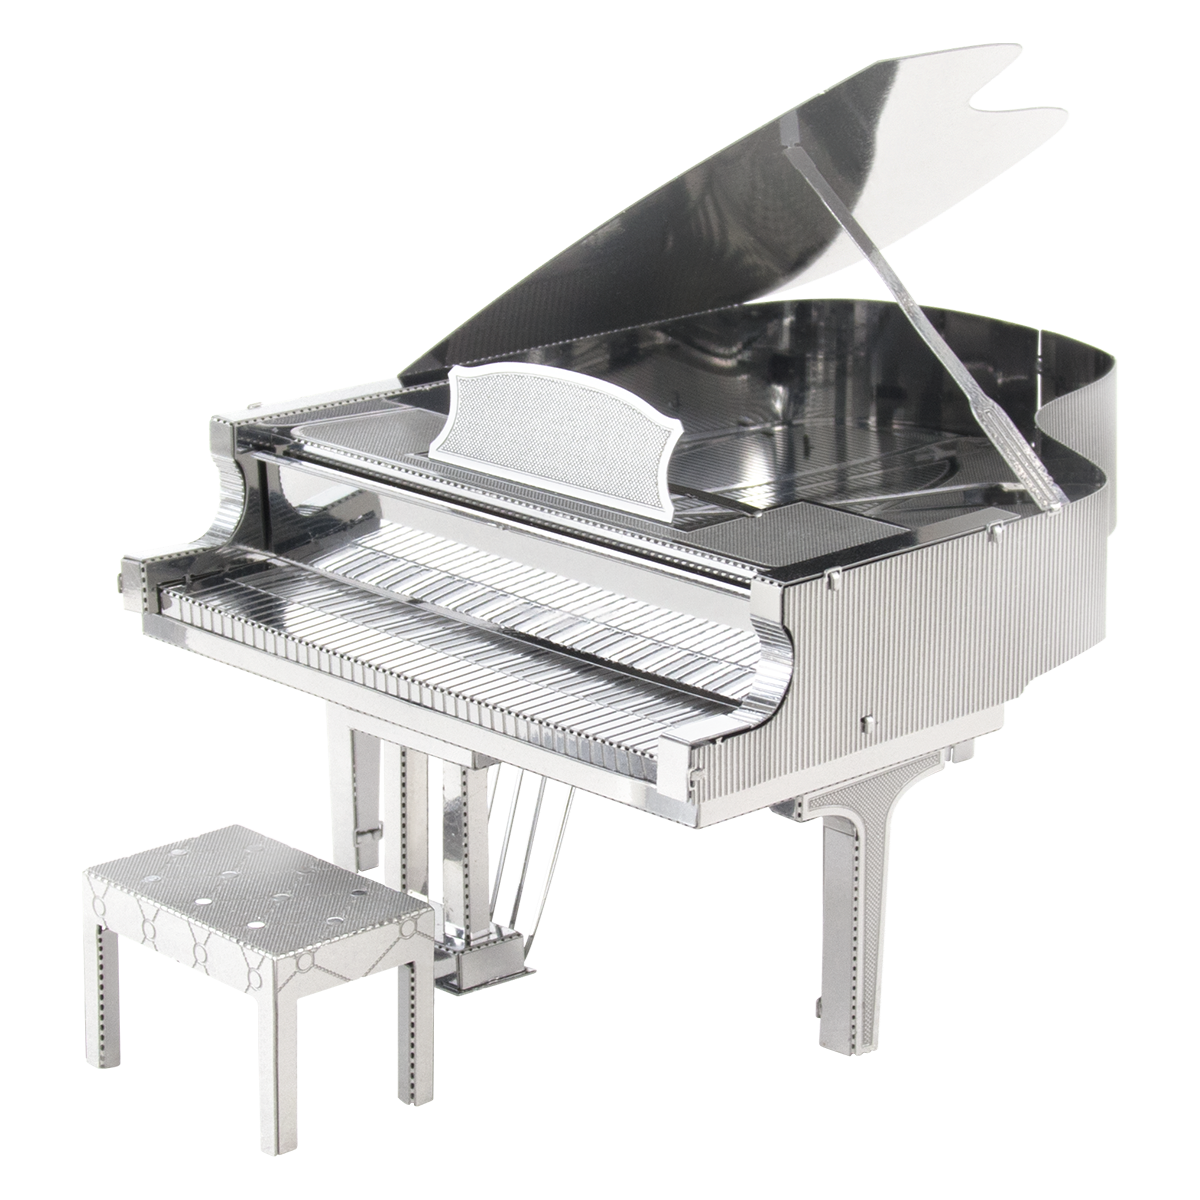 Apariencia Ponte de pie en su lugar Mata Metal Earth Musical - Grand Piano | 3D Metal Model Kits